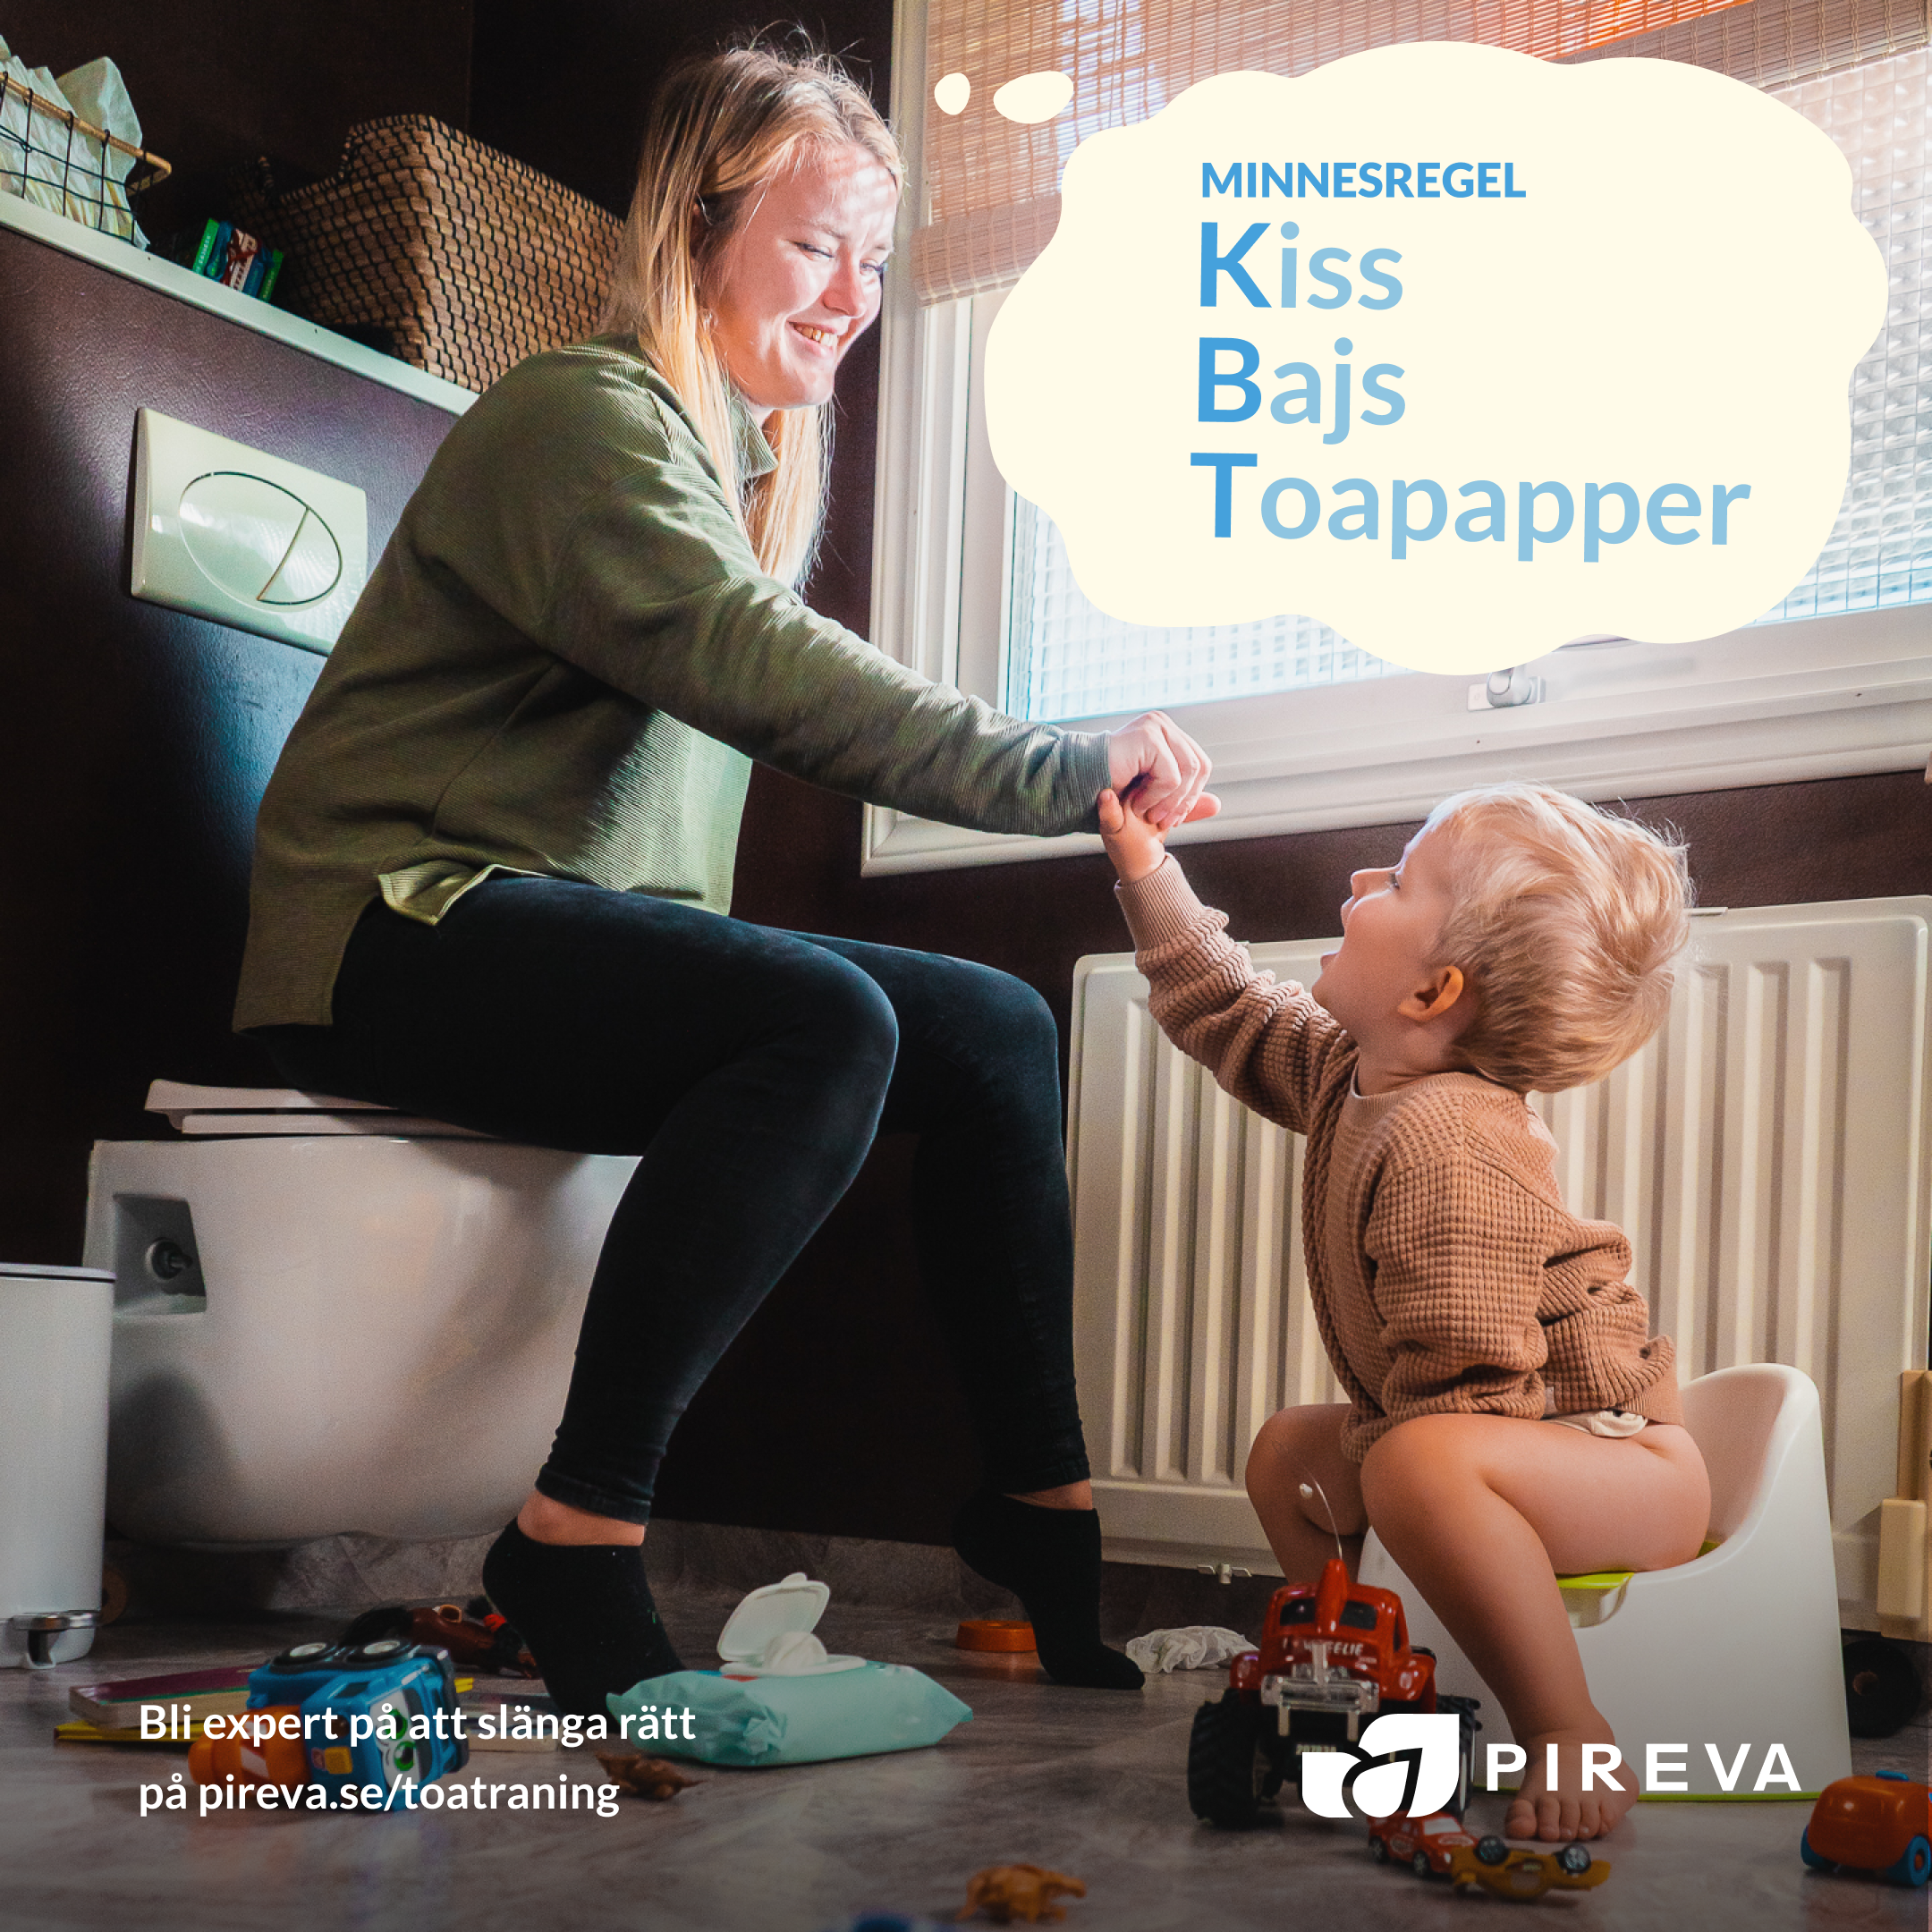 Reklam från Pireva om Toaträning för vuxna. Potträning litet barn och mamma tänker minnesregeln KBT: Kiss, Bajs, Toapapper